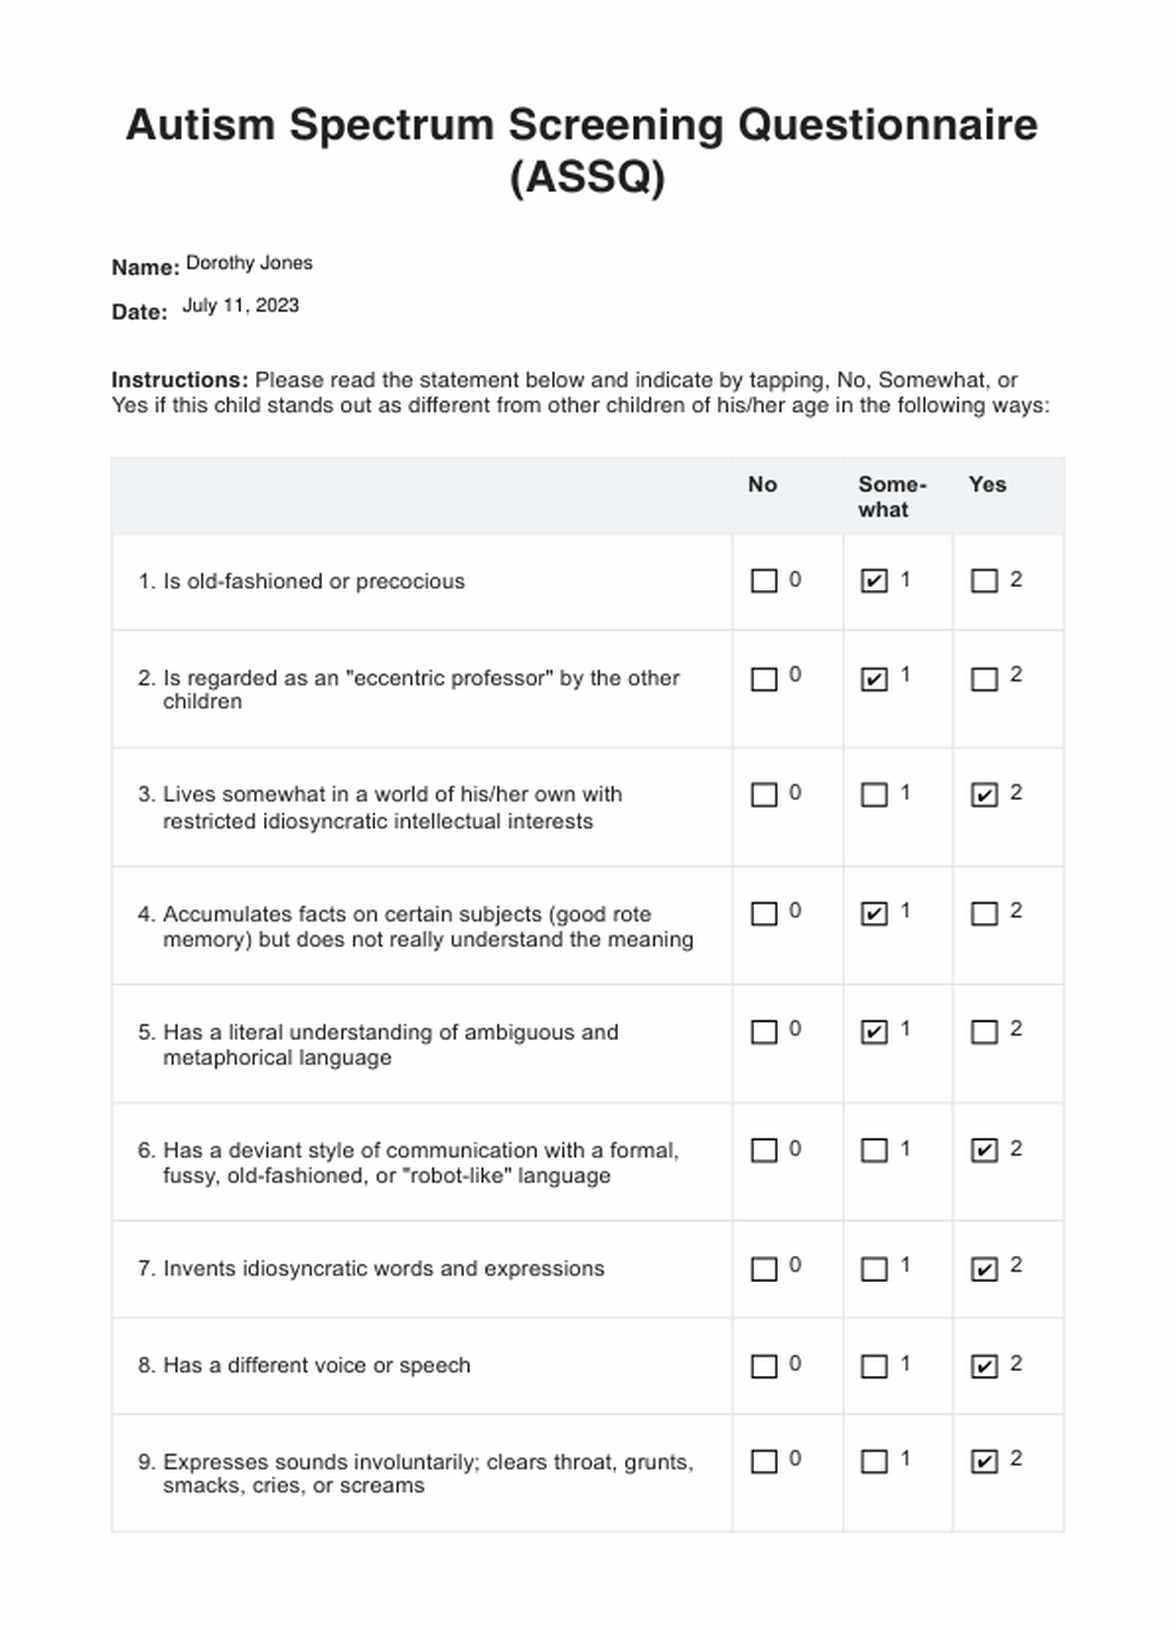 Autism Spectrum Screening Questionnaire (ASSQ) Guide PDF Example